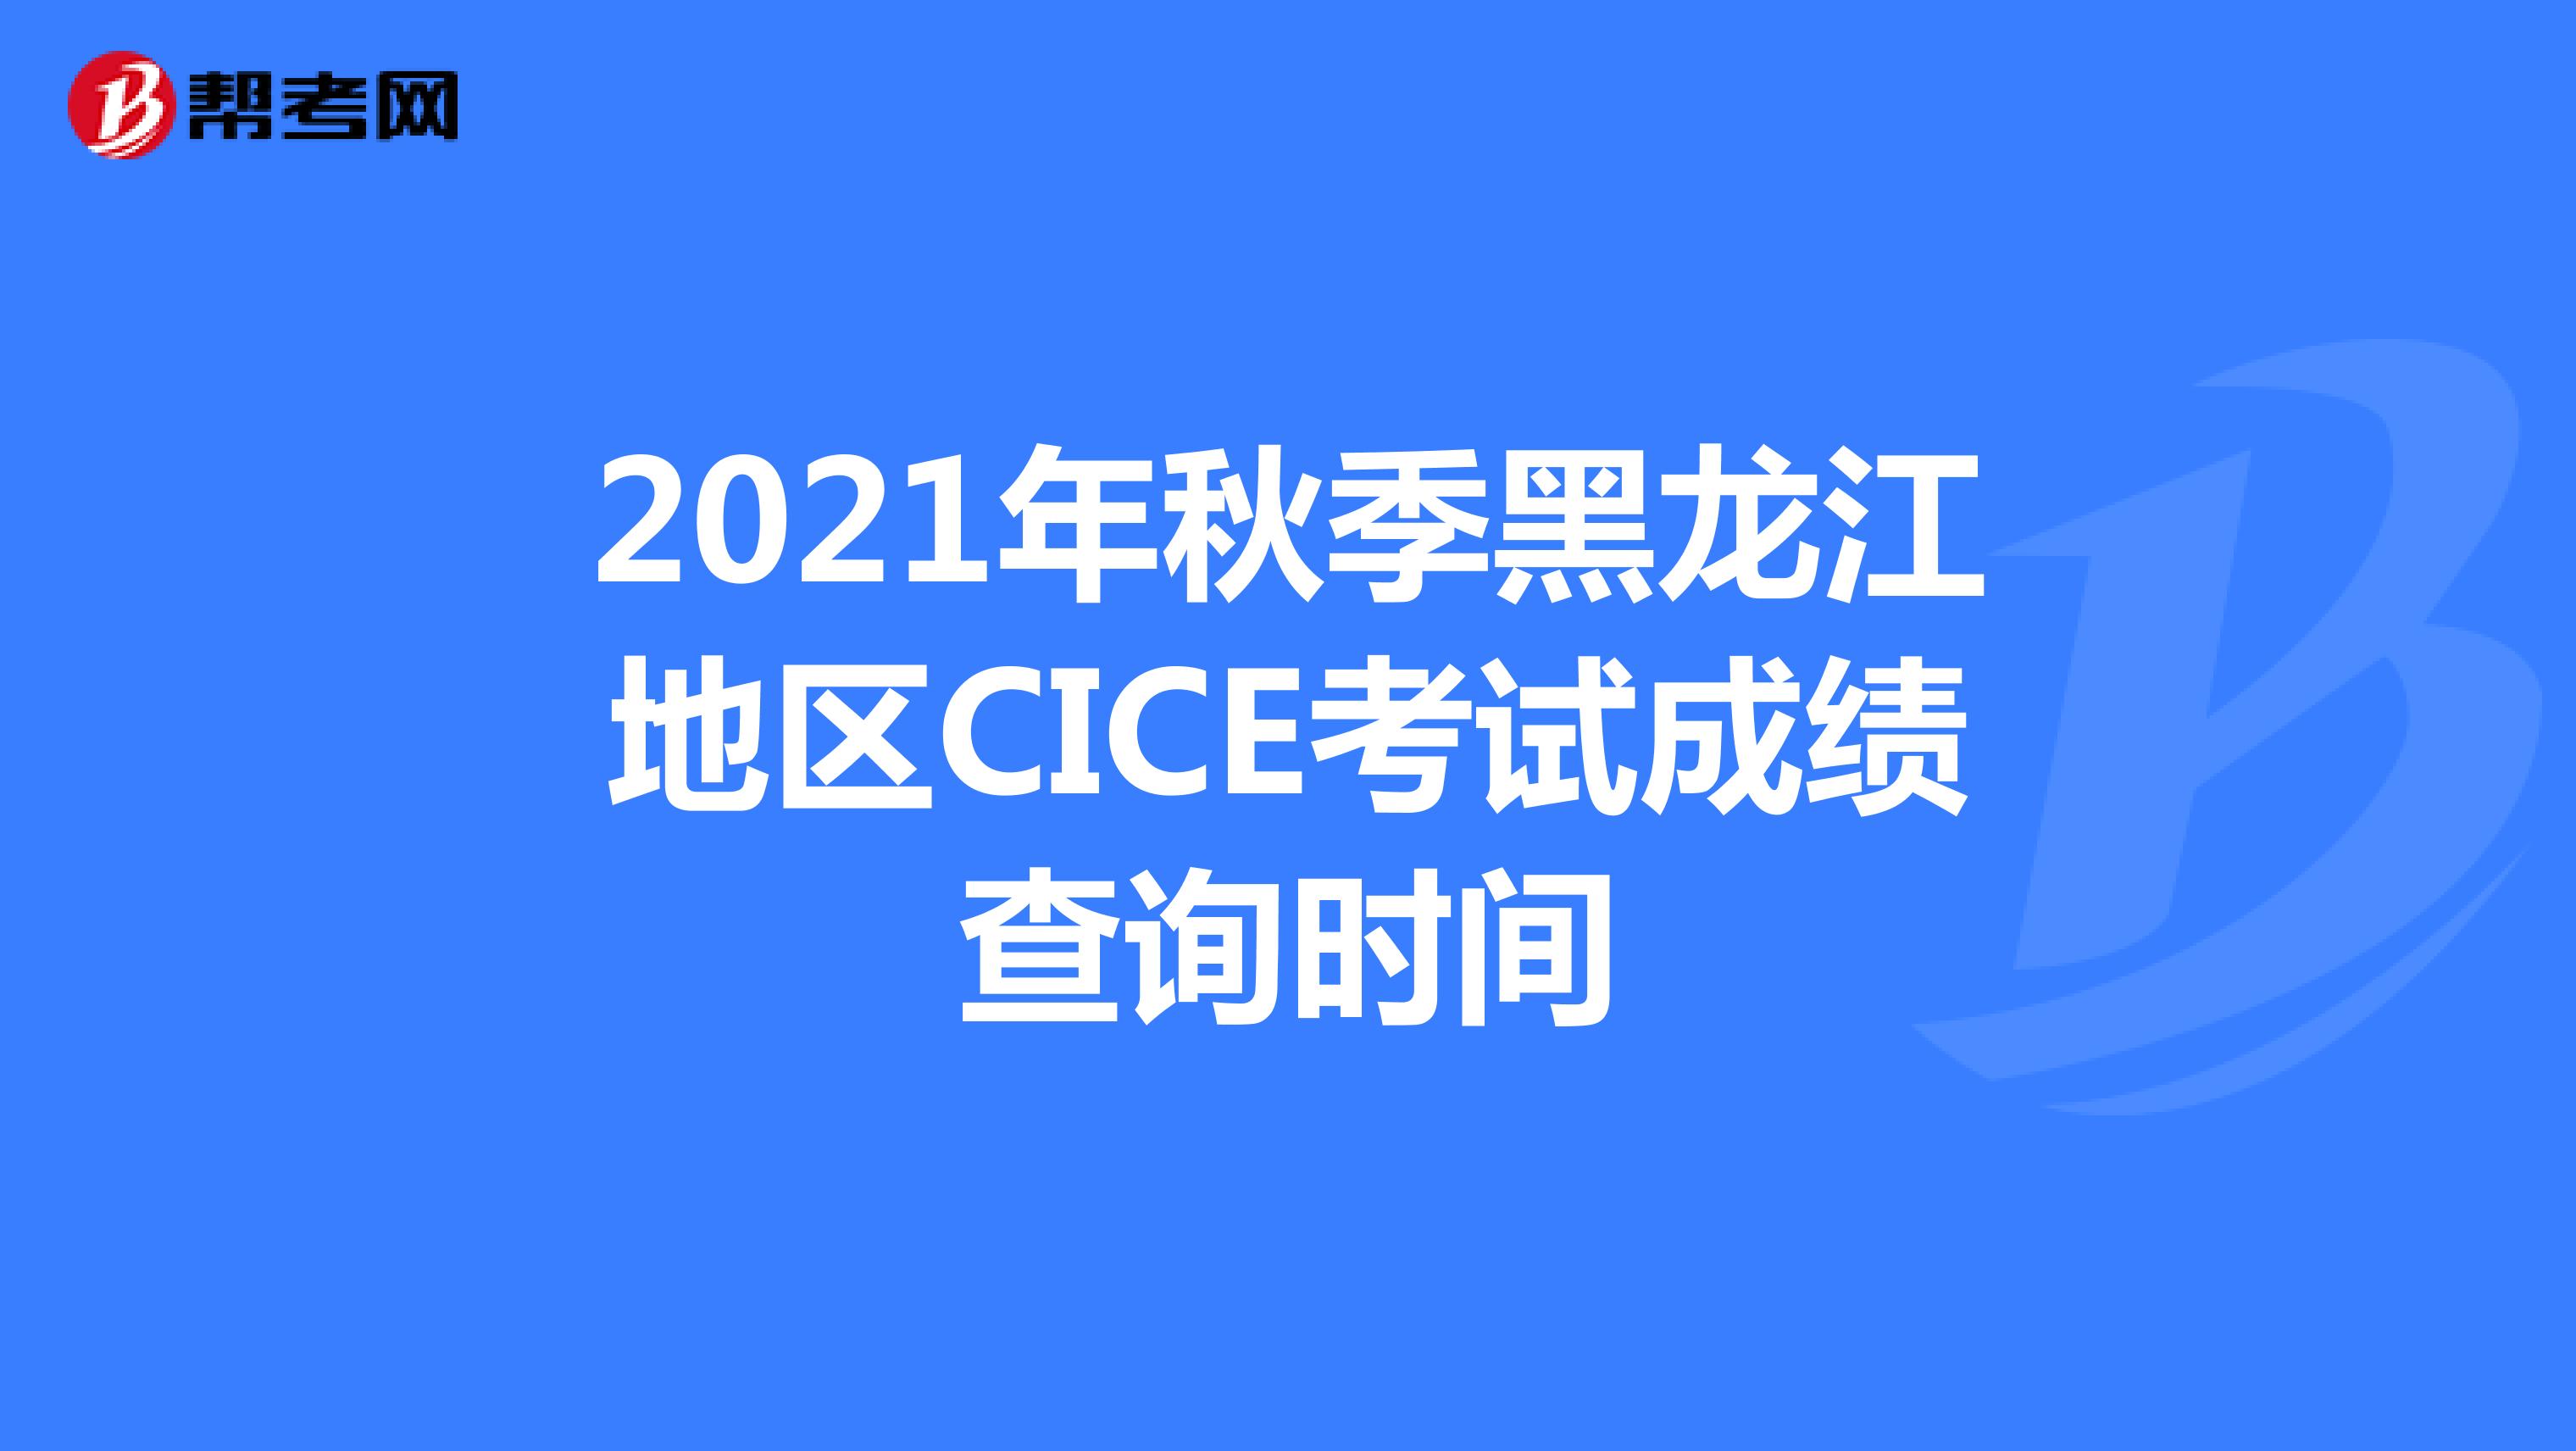 2021年秋季黑龙江地区CICE考试成绩查询时间